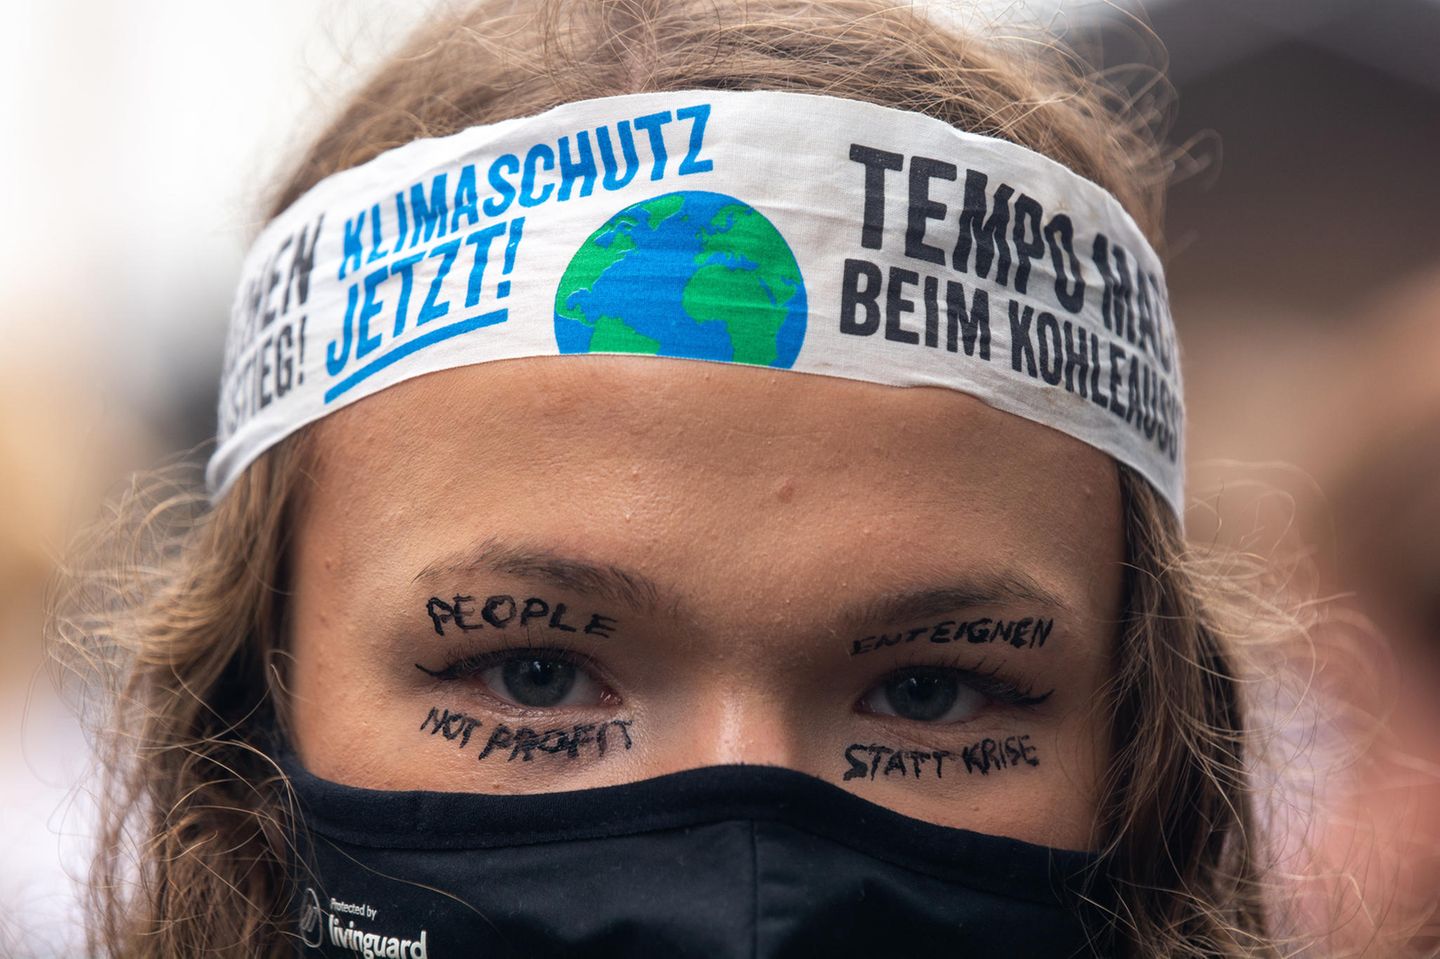 Klimaaktivistin mit Maske